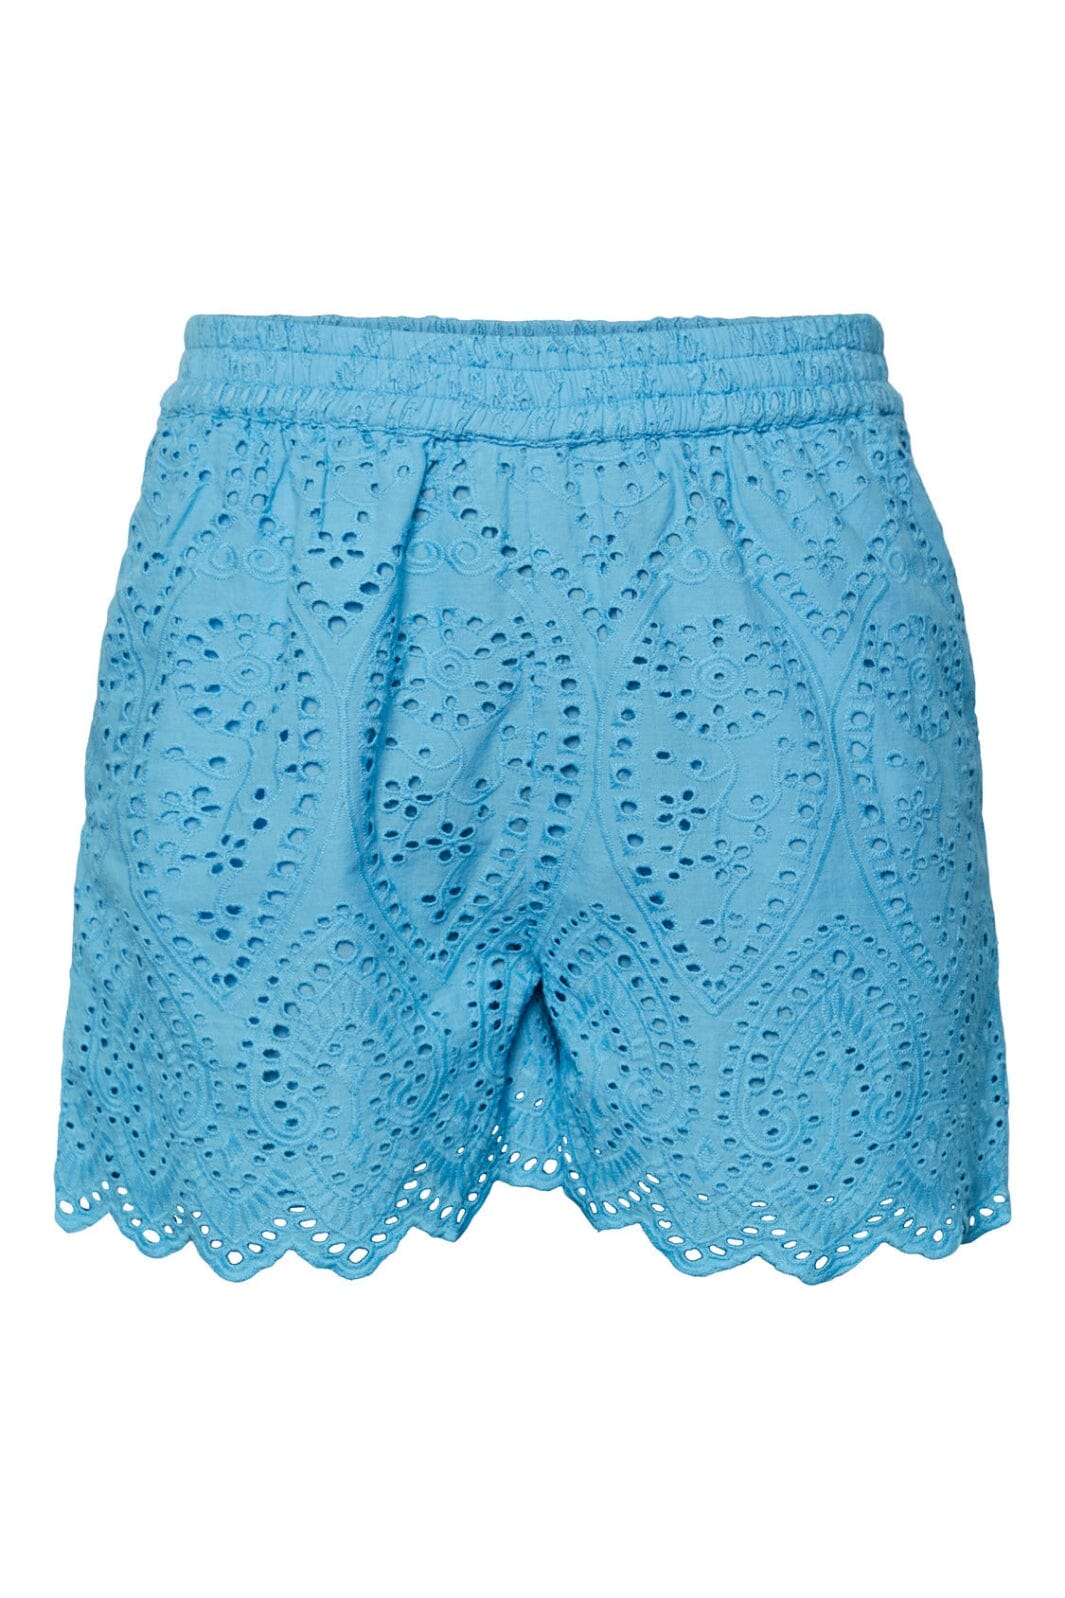 Y.A.S - Yasholi Shorts S. - Ethereal Blue Shorts 